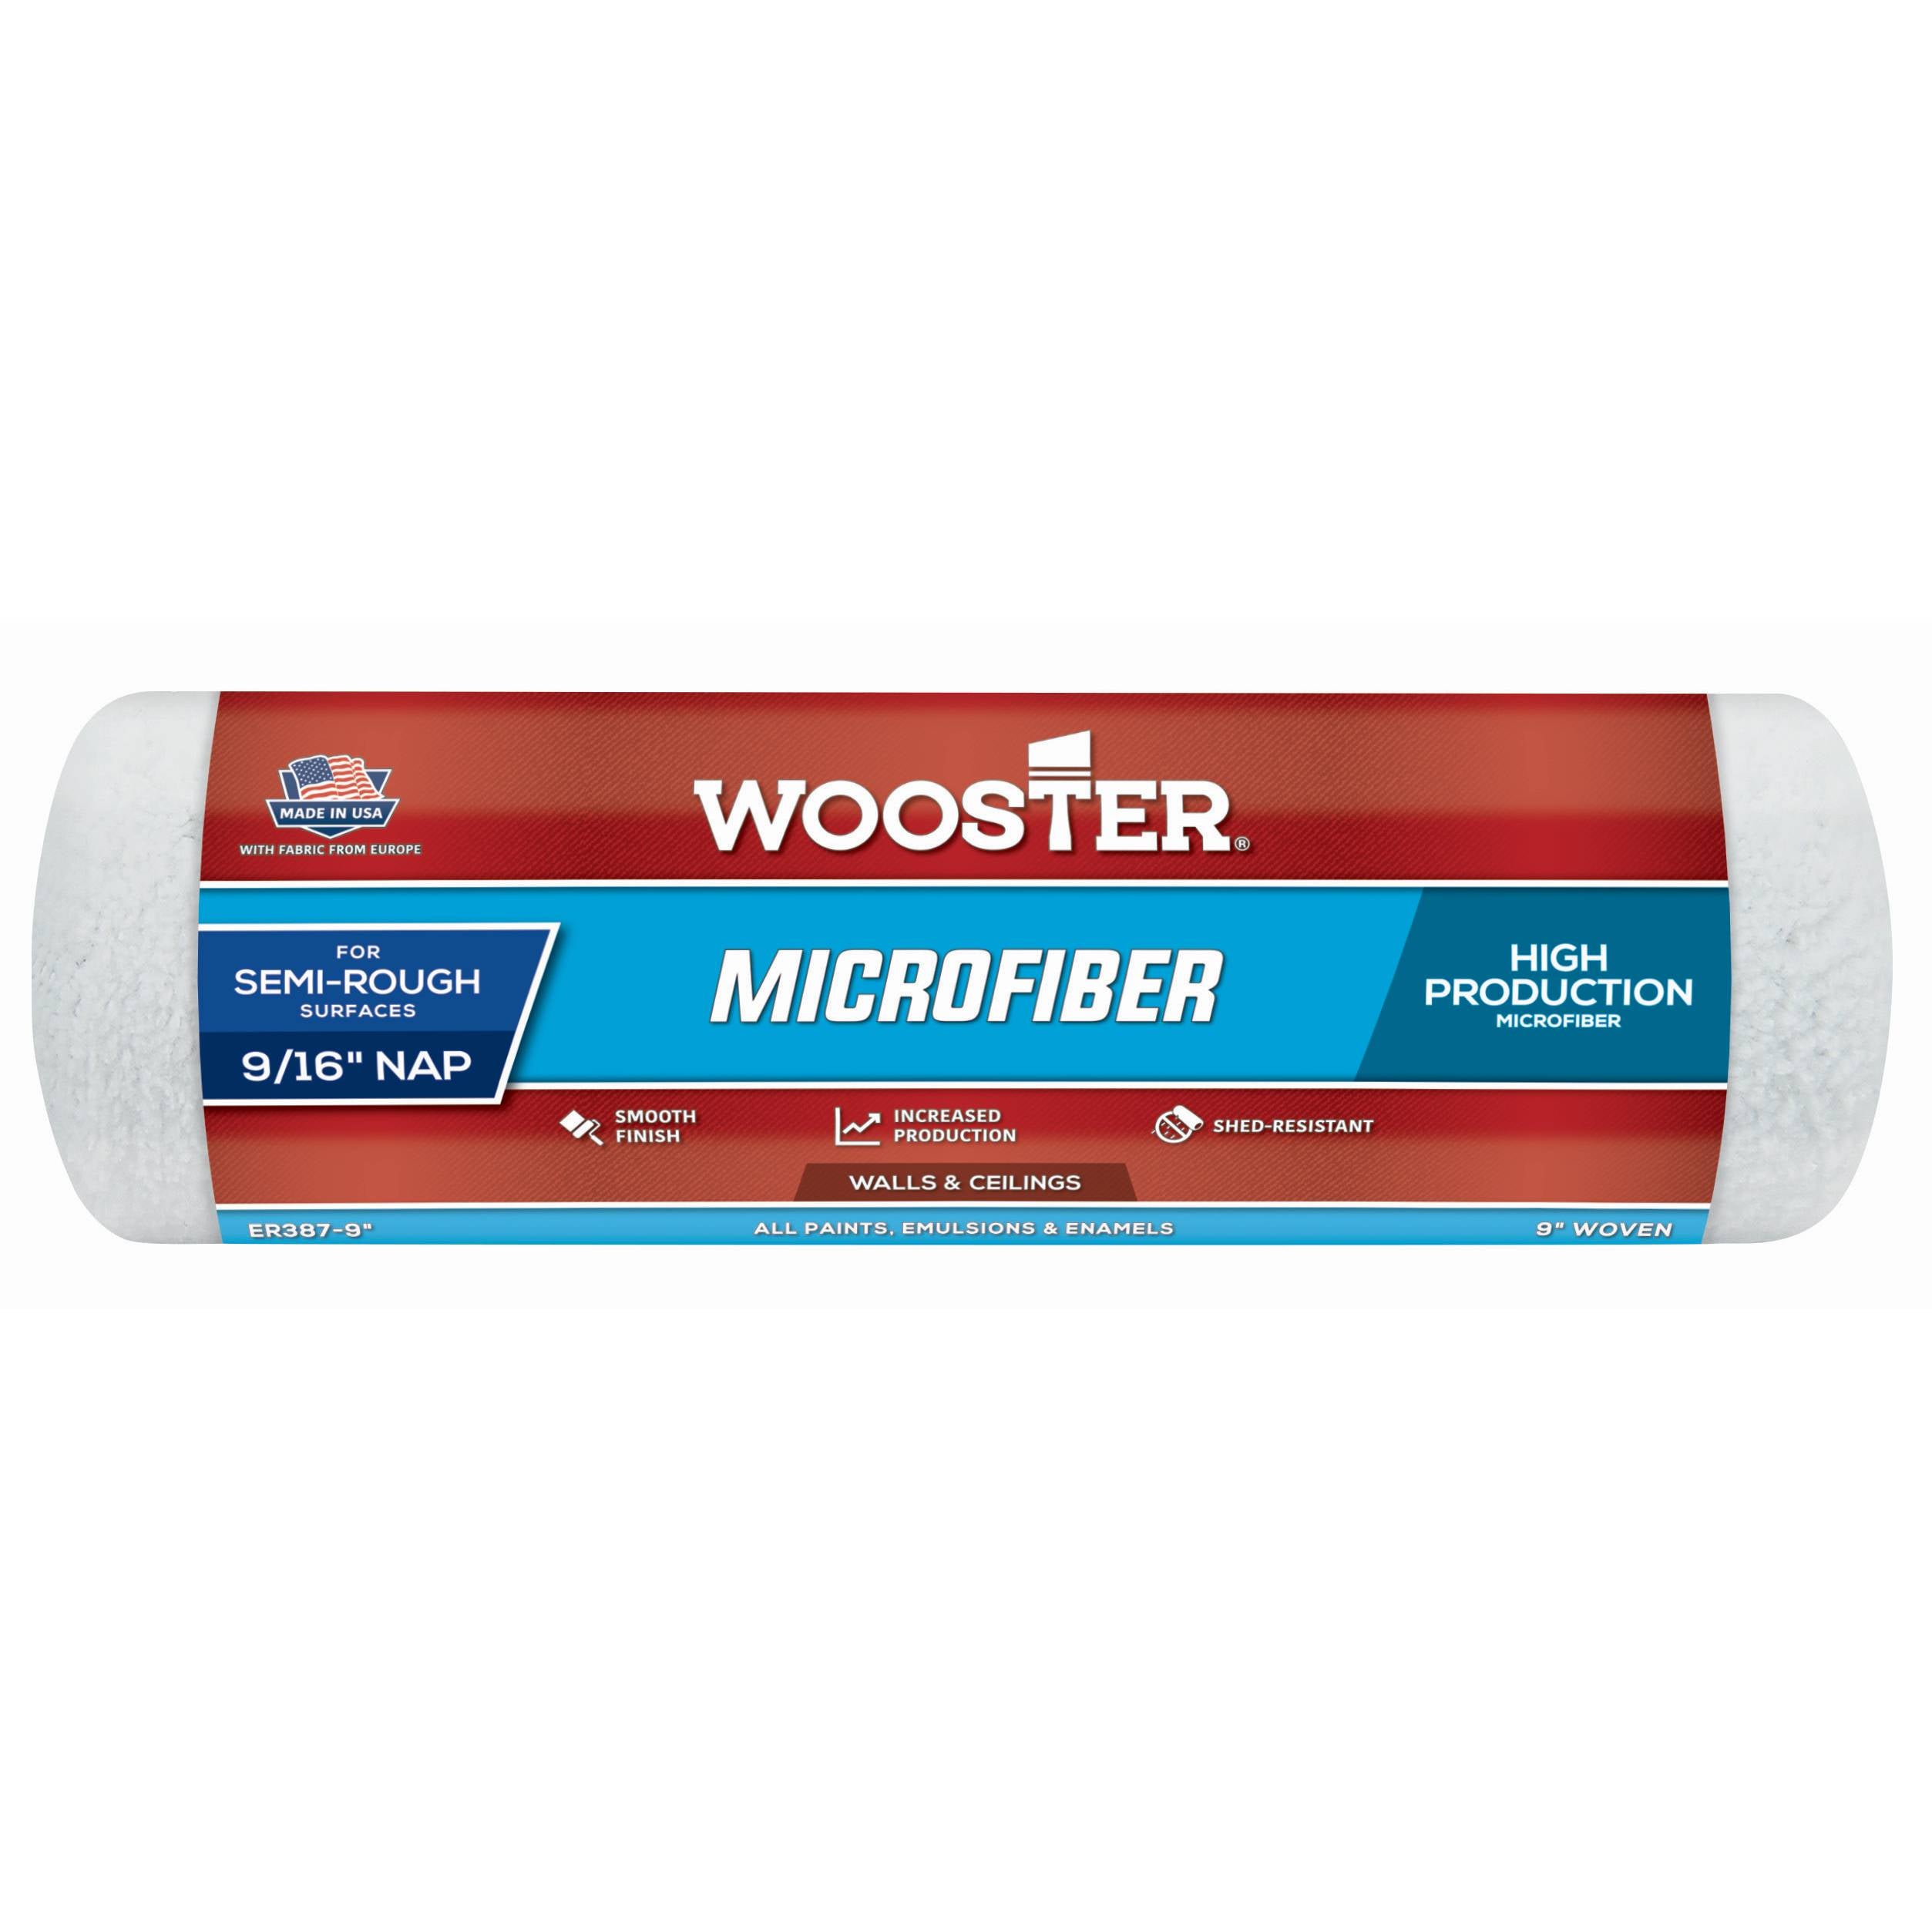 Wooster 9" Microfiber Paint Roller Sleeve